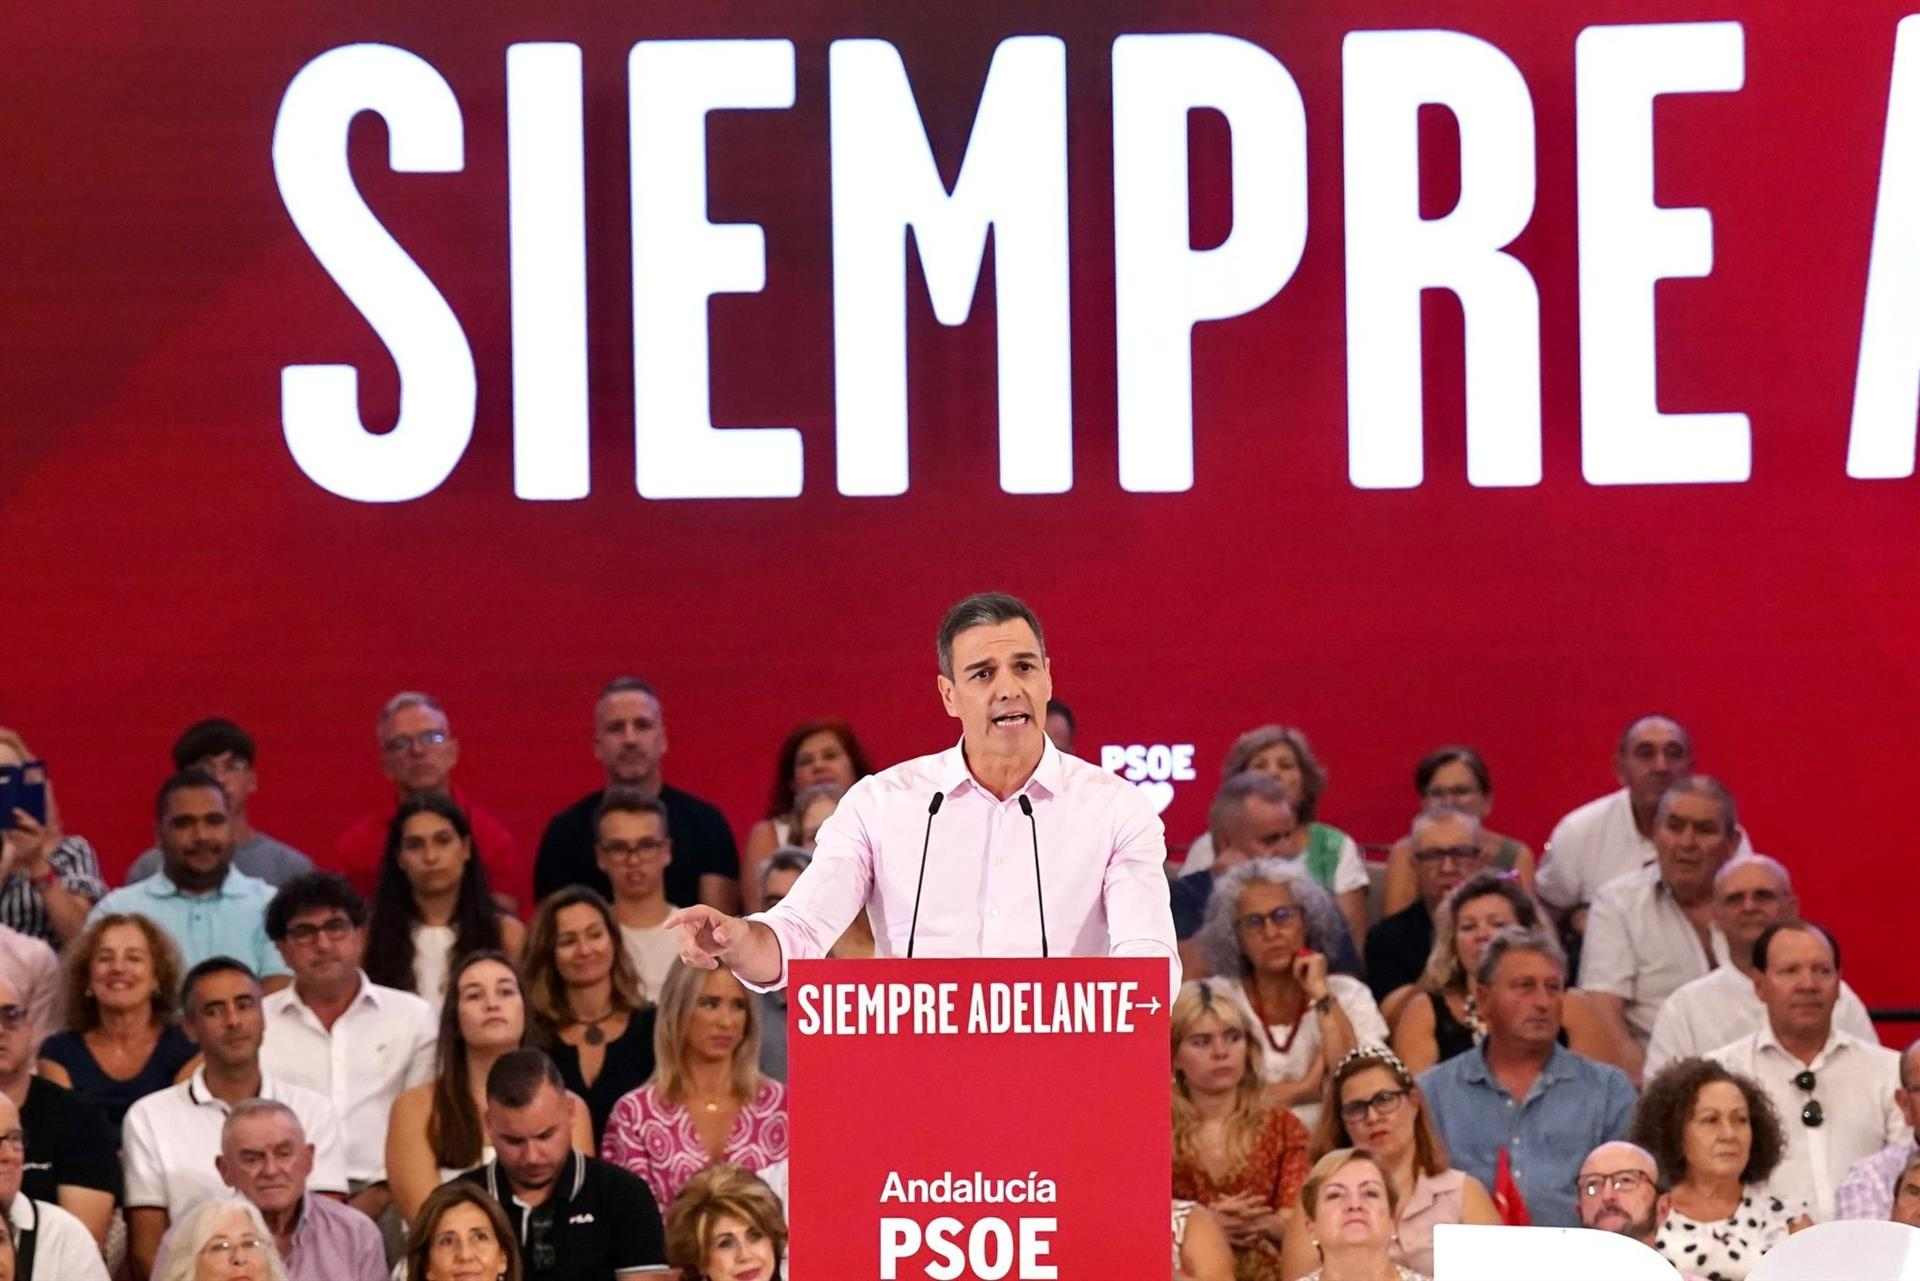 Pedro Sánchez assenyala Rubiales i li retreu que no pot aspirar a representar Espanya: "S'ha acabat"